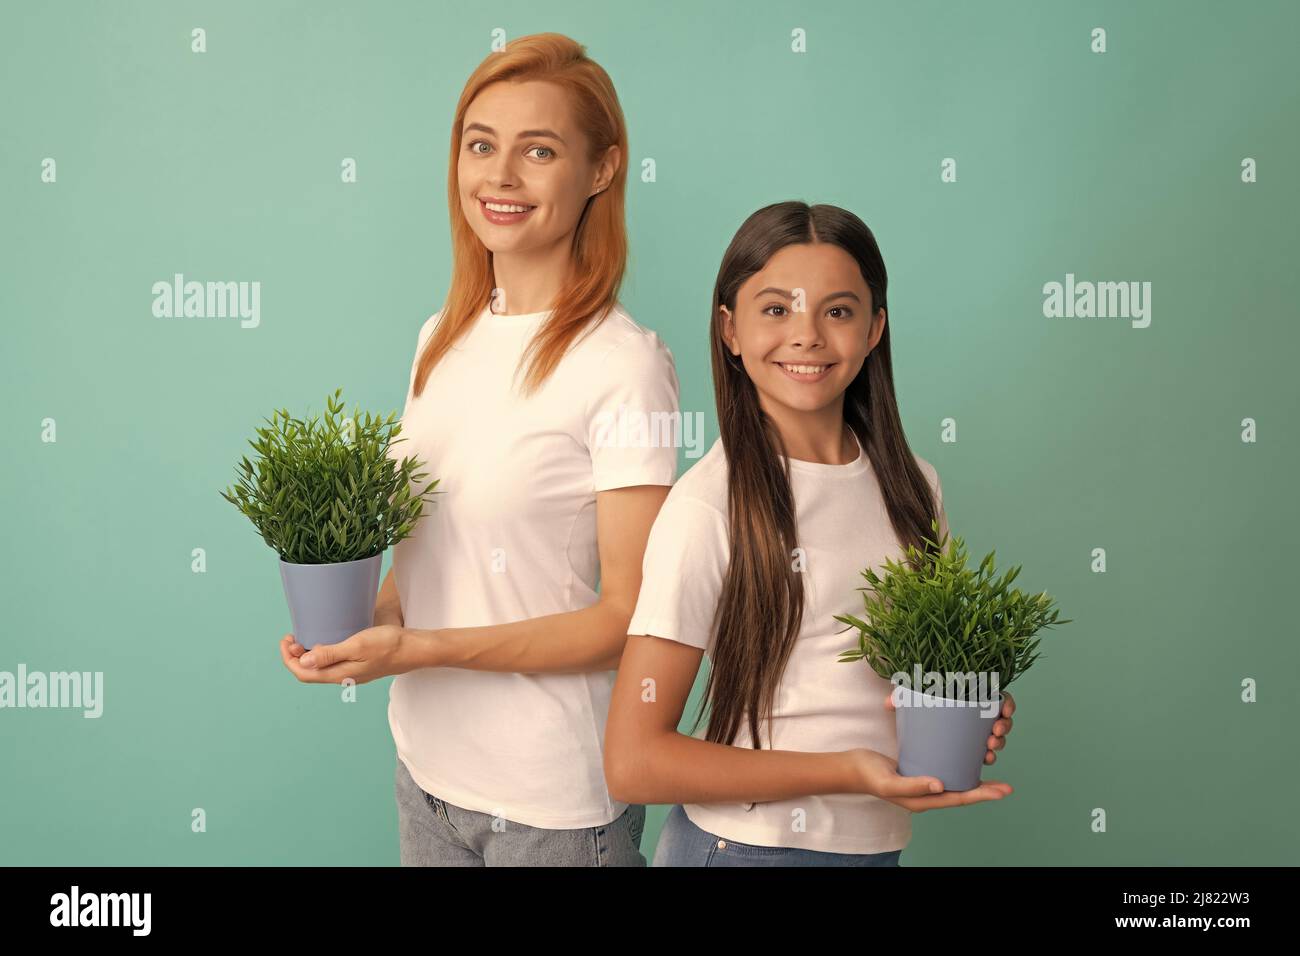 Adoptivfamilie von adoptierten Tochter Kind und Frau Mutter lächeln mit Topfpflanzen, Pflege Stockfoto